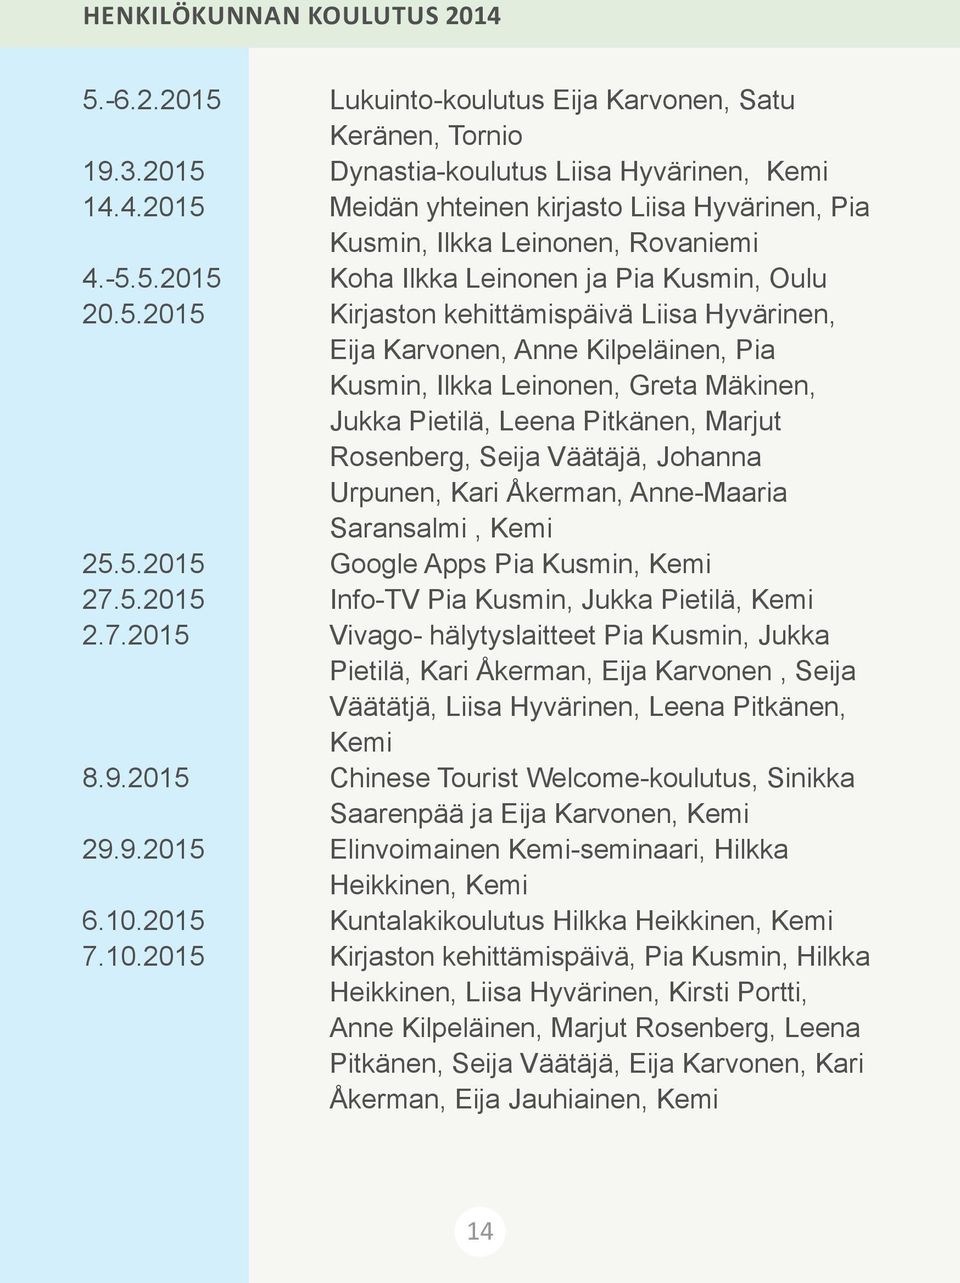 Pitkänen, Marjut Rosenberg, Seija Väätäjä, Johanna Urpunen, Kari Åkerman, Anne-Maaria Saransalmi, Kemi 25.5.2015 Google Apps Pia Kusmin, Kemi 27.